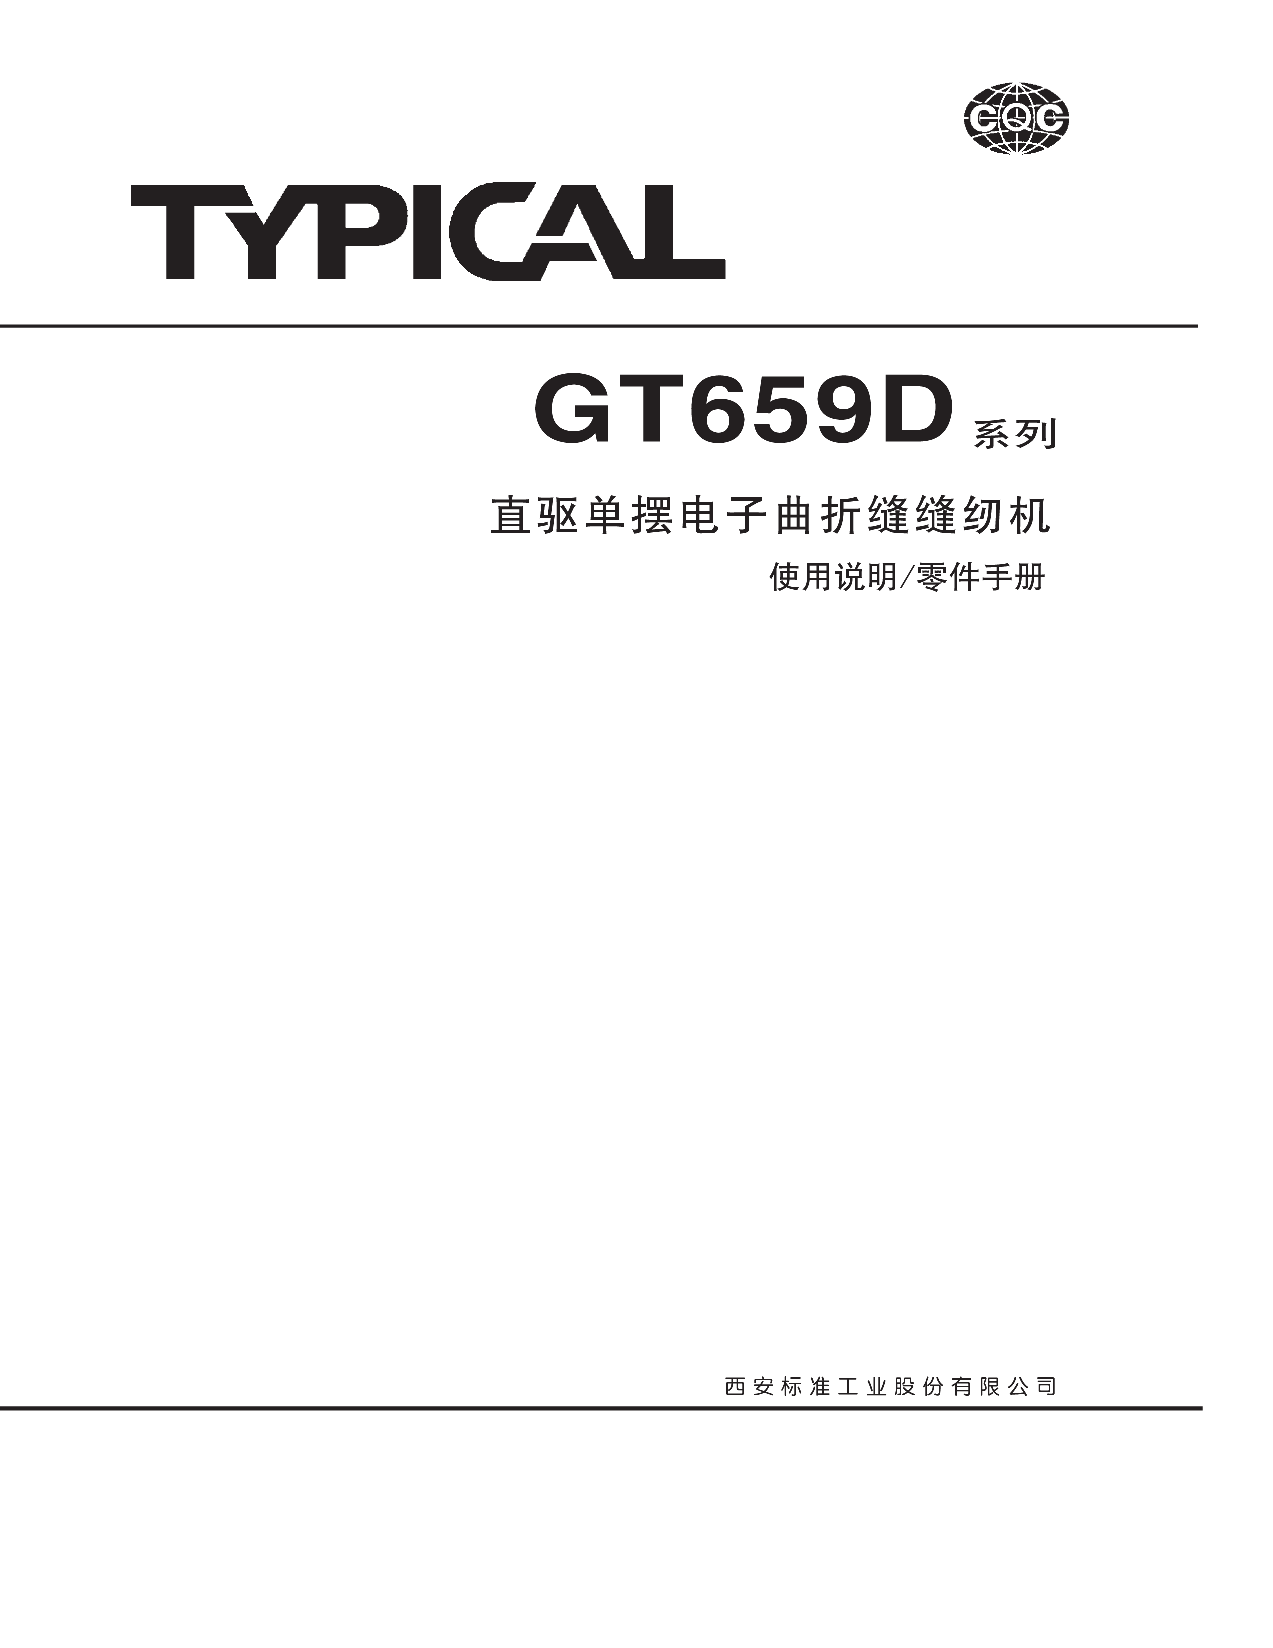 标准 Typical GT659D 使用说明书 封面